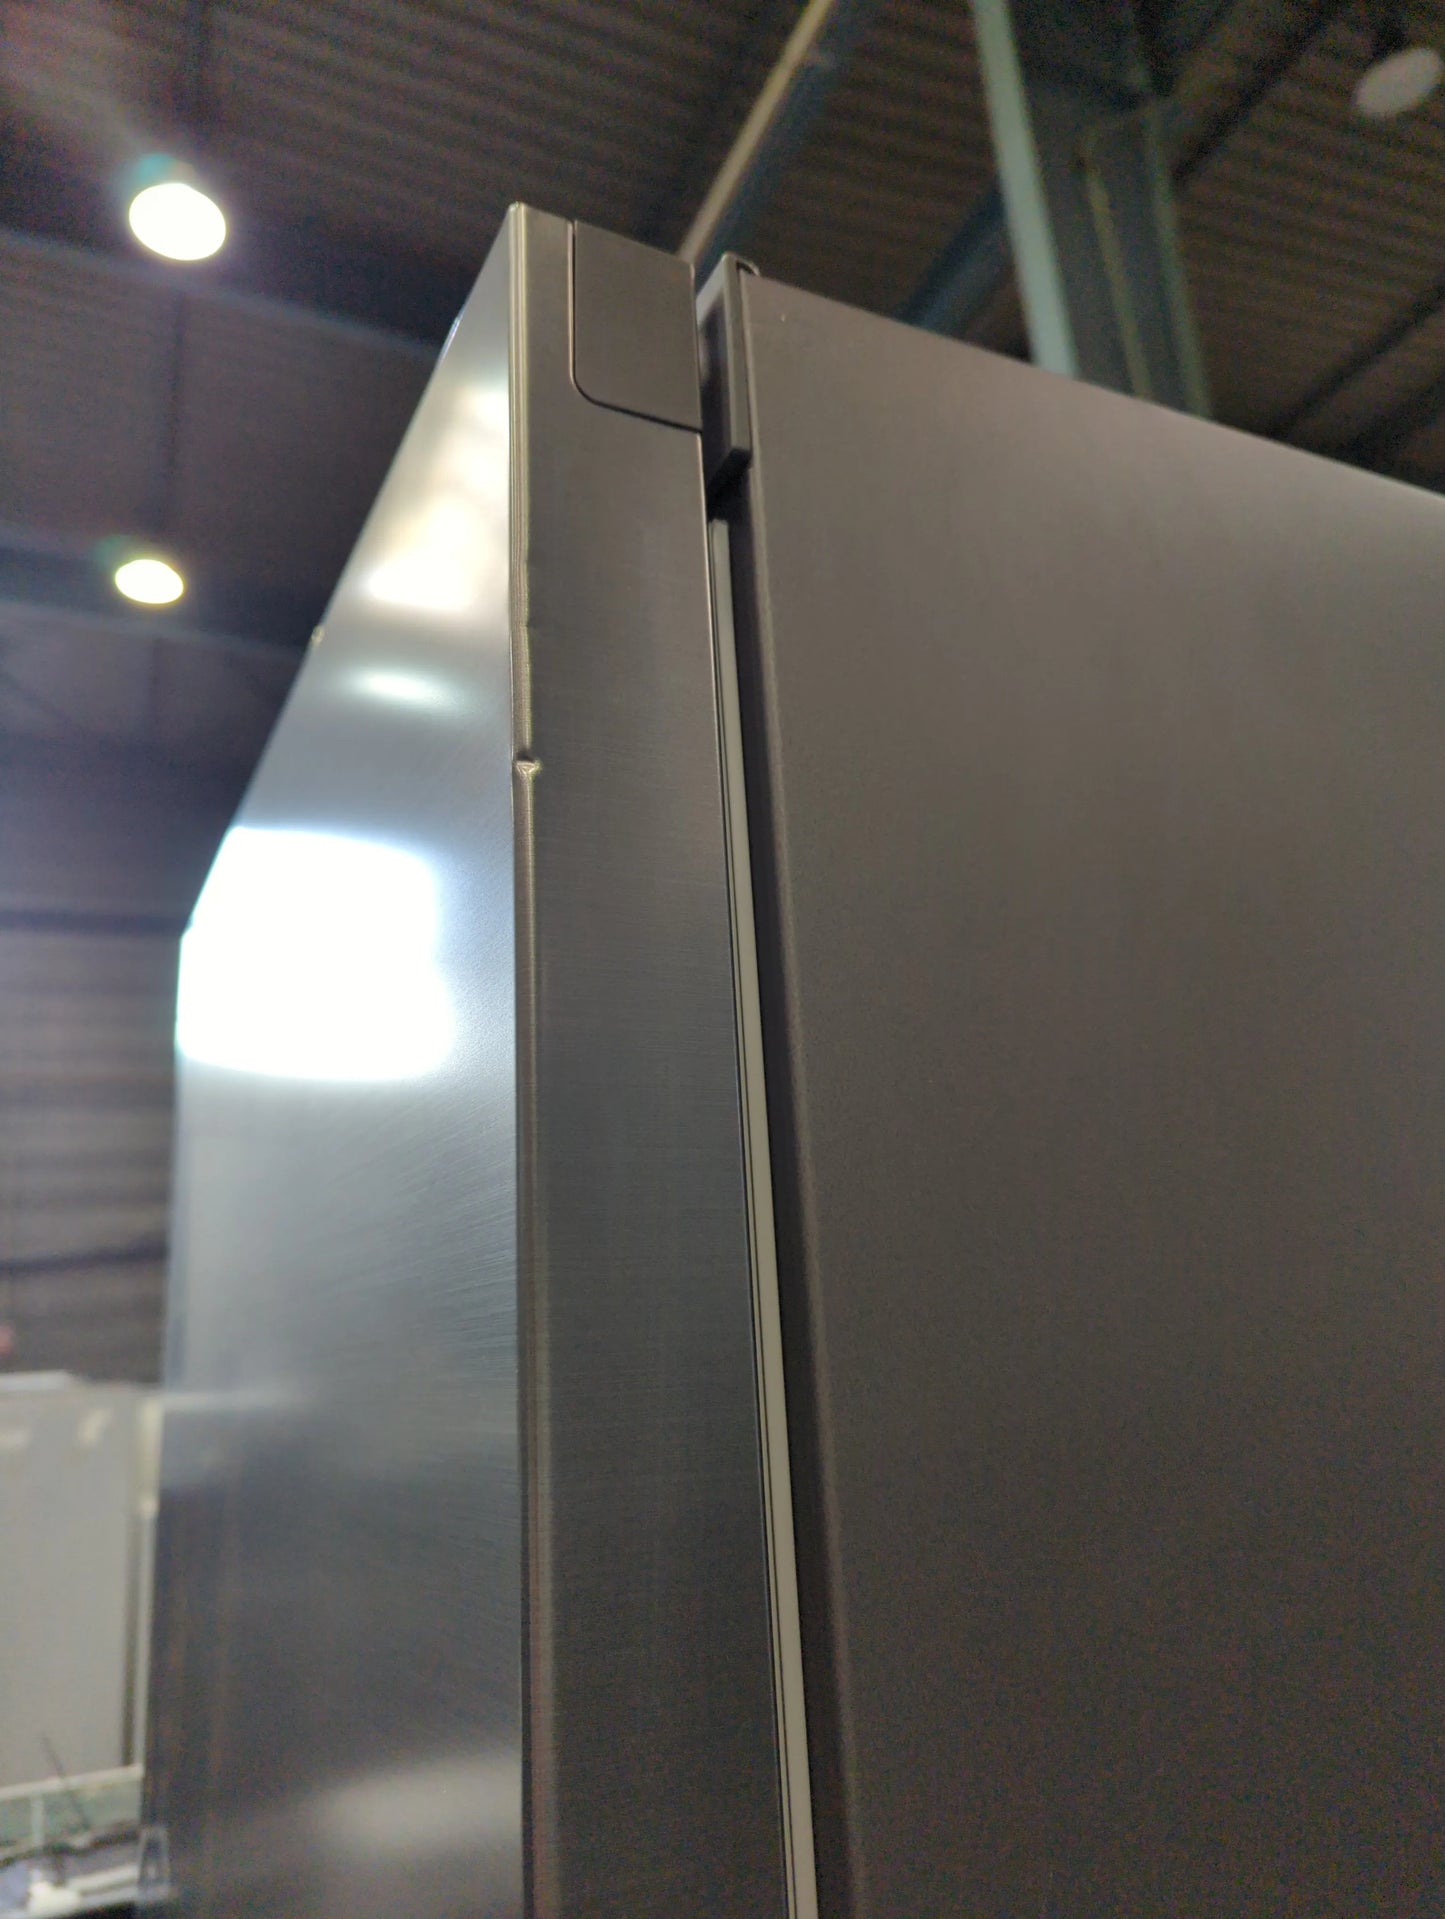 Réfrigérateur Avec Congélateur 406 L Reconditionné SAMSUNG RB41R7737S9 : détails